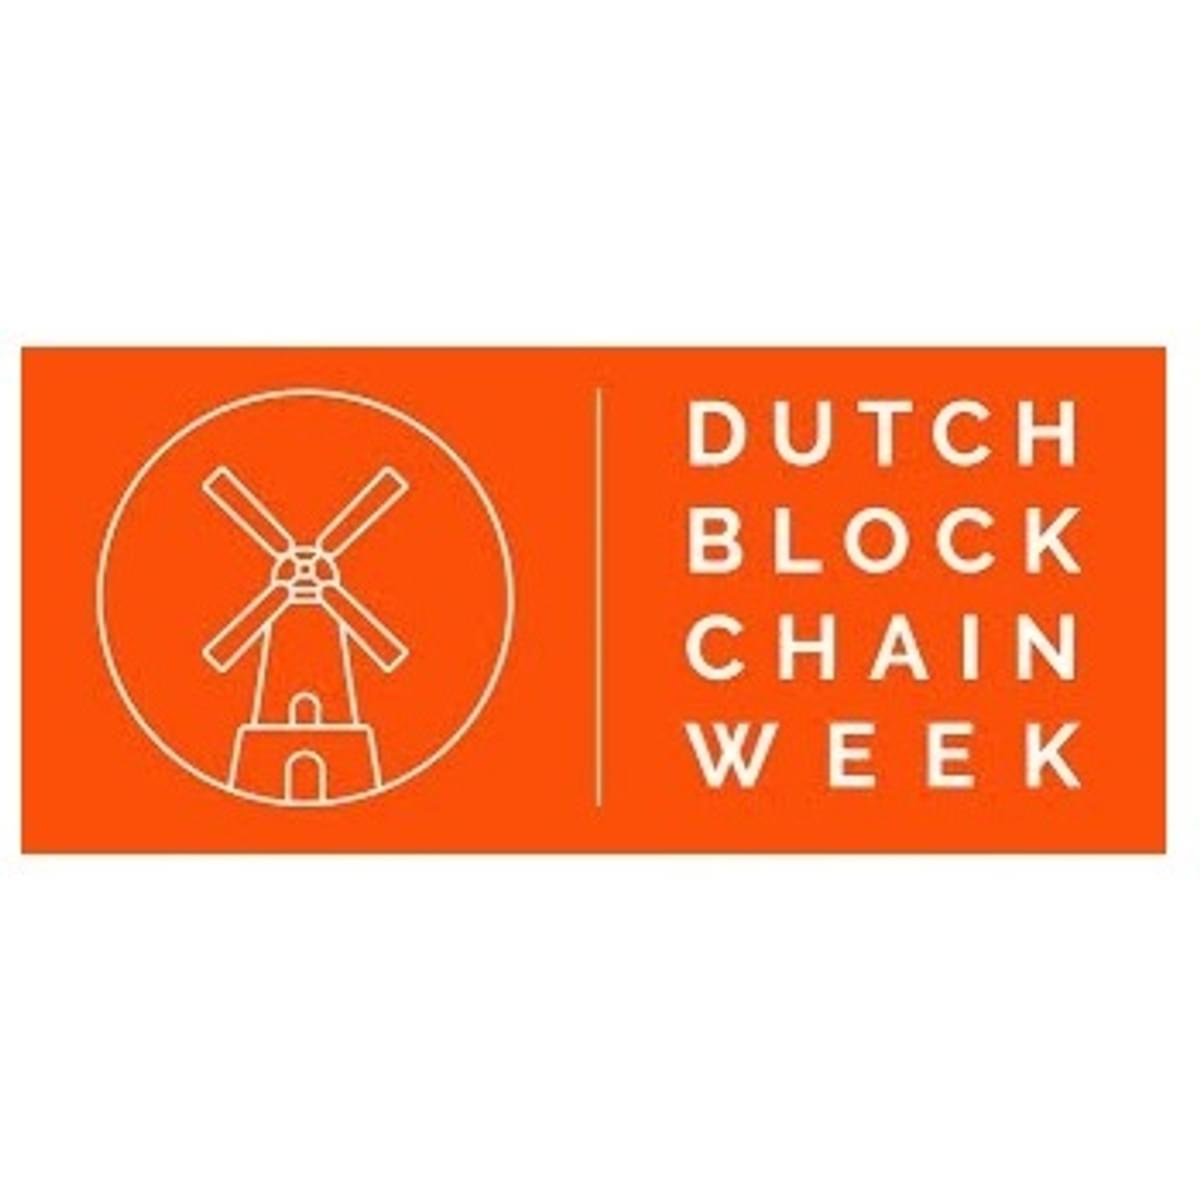 Dutch Blockchain Week 2021 image